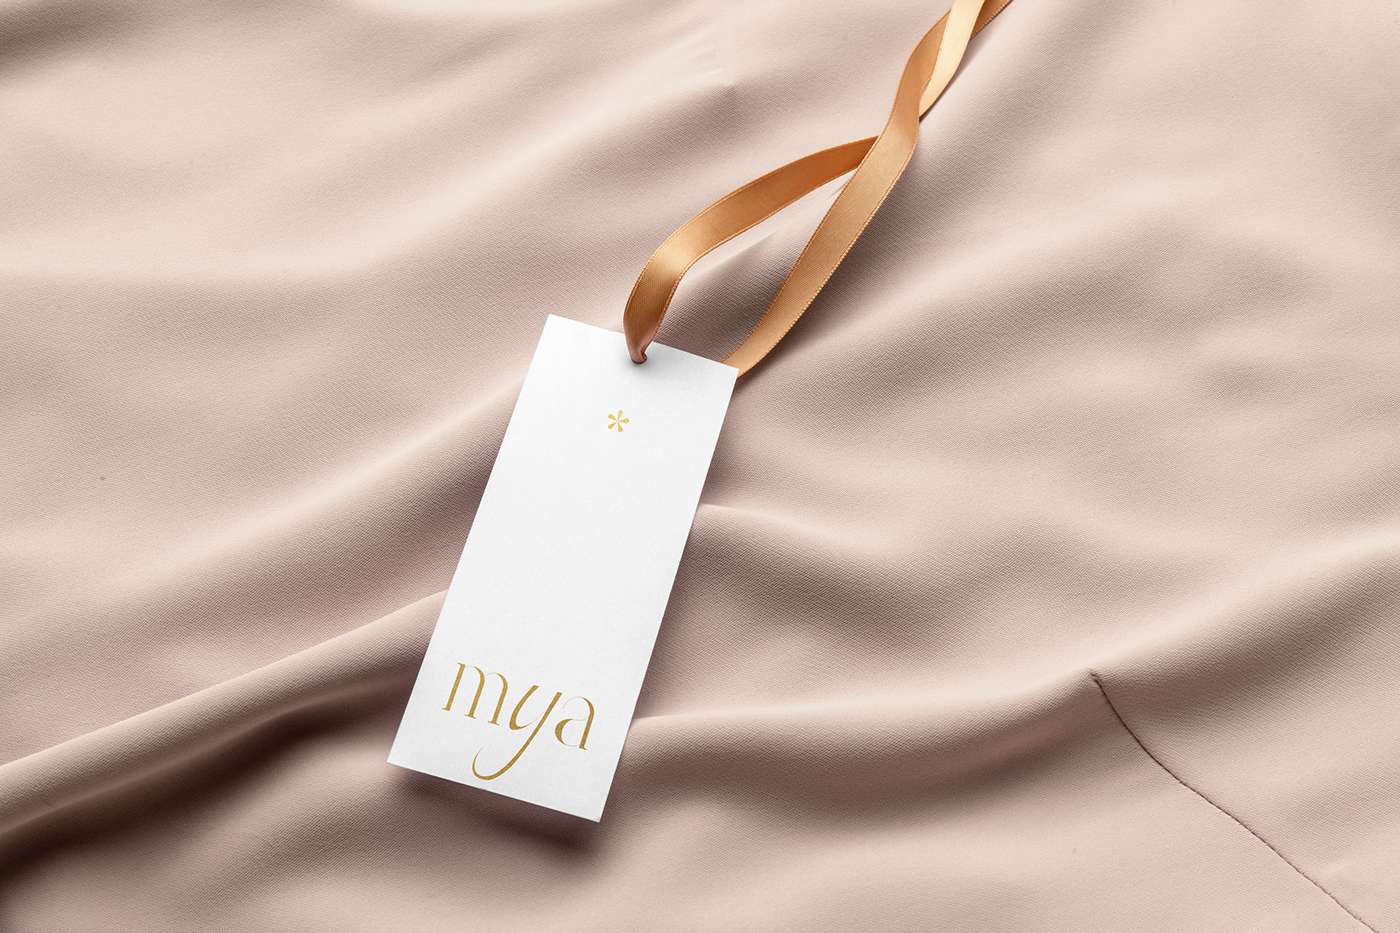 Mya丝绸时尚品牌形象设计